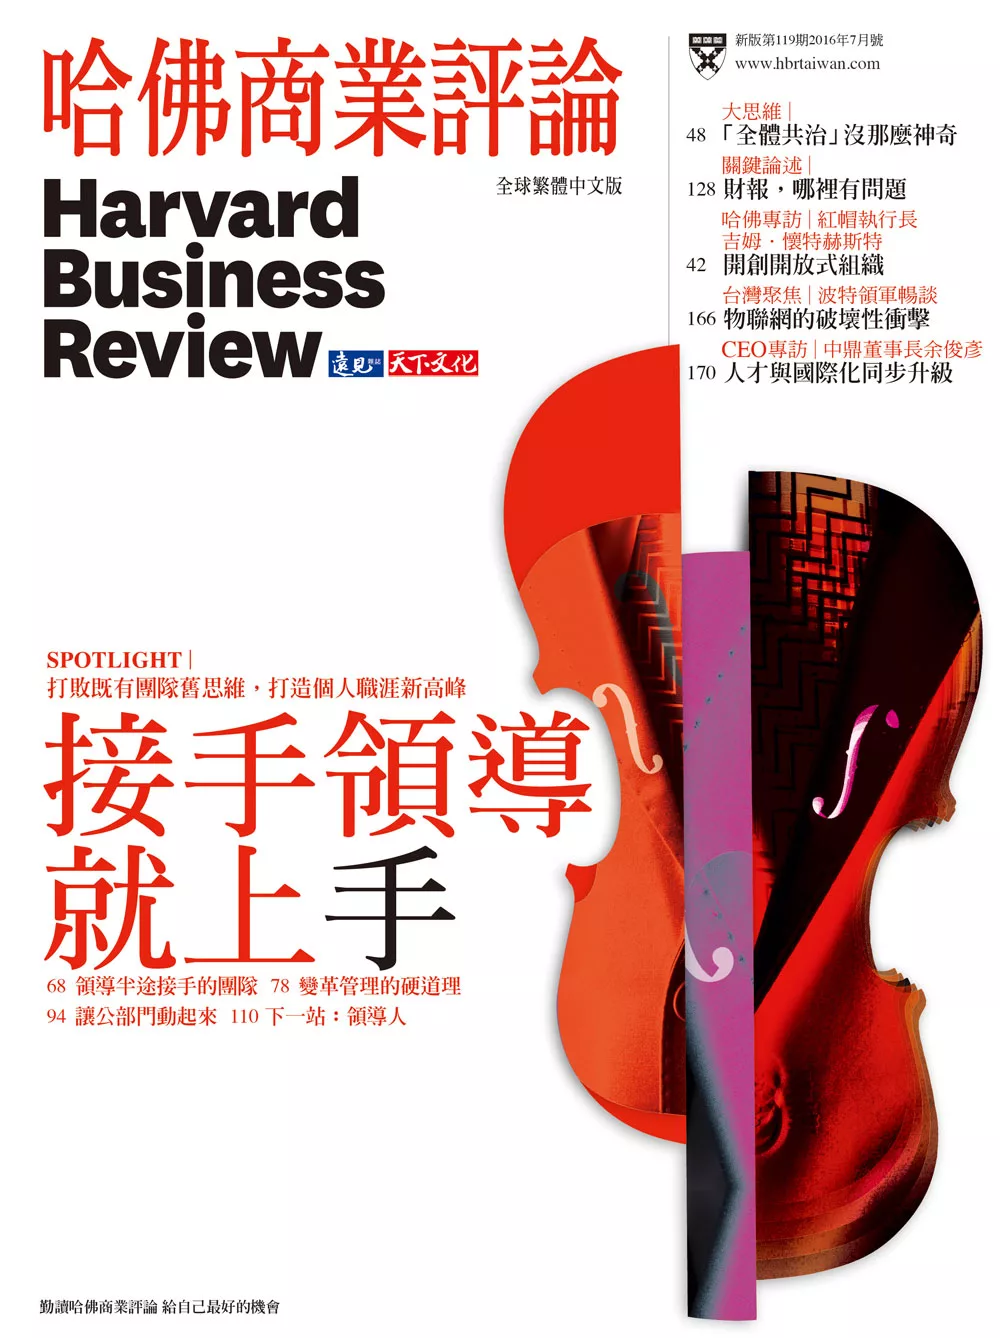 哈佛商業評論全球中文版 7月號 / 2016年 第119期 (電子雜誌)